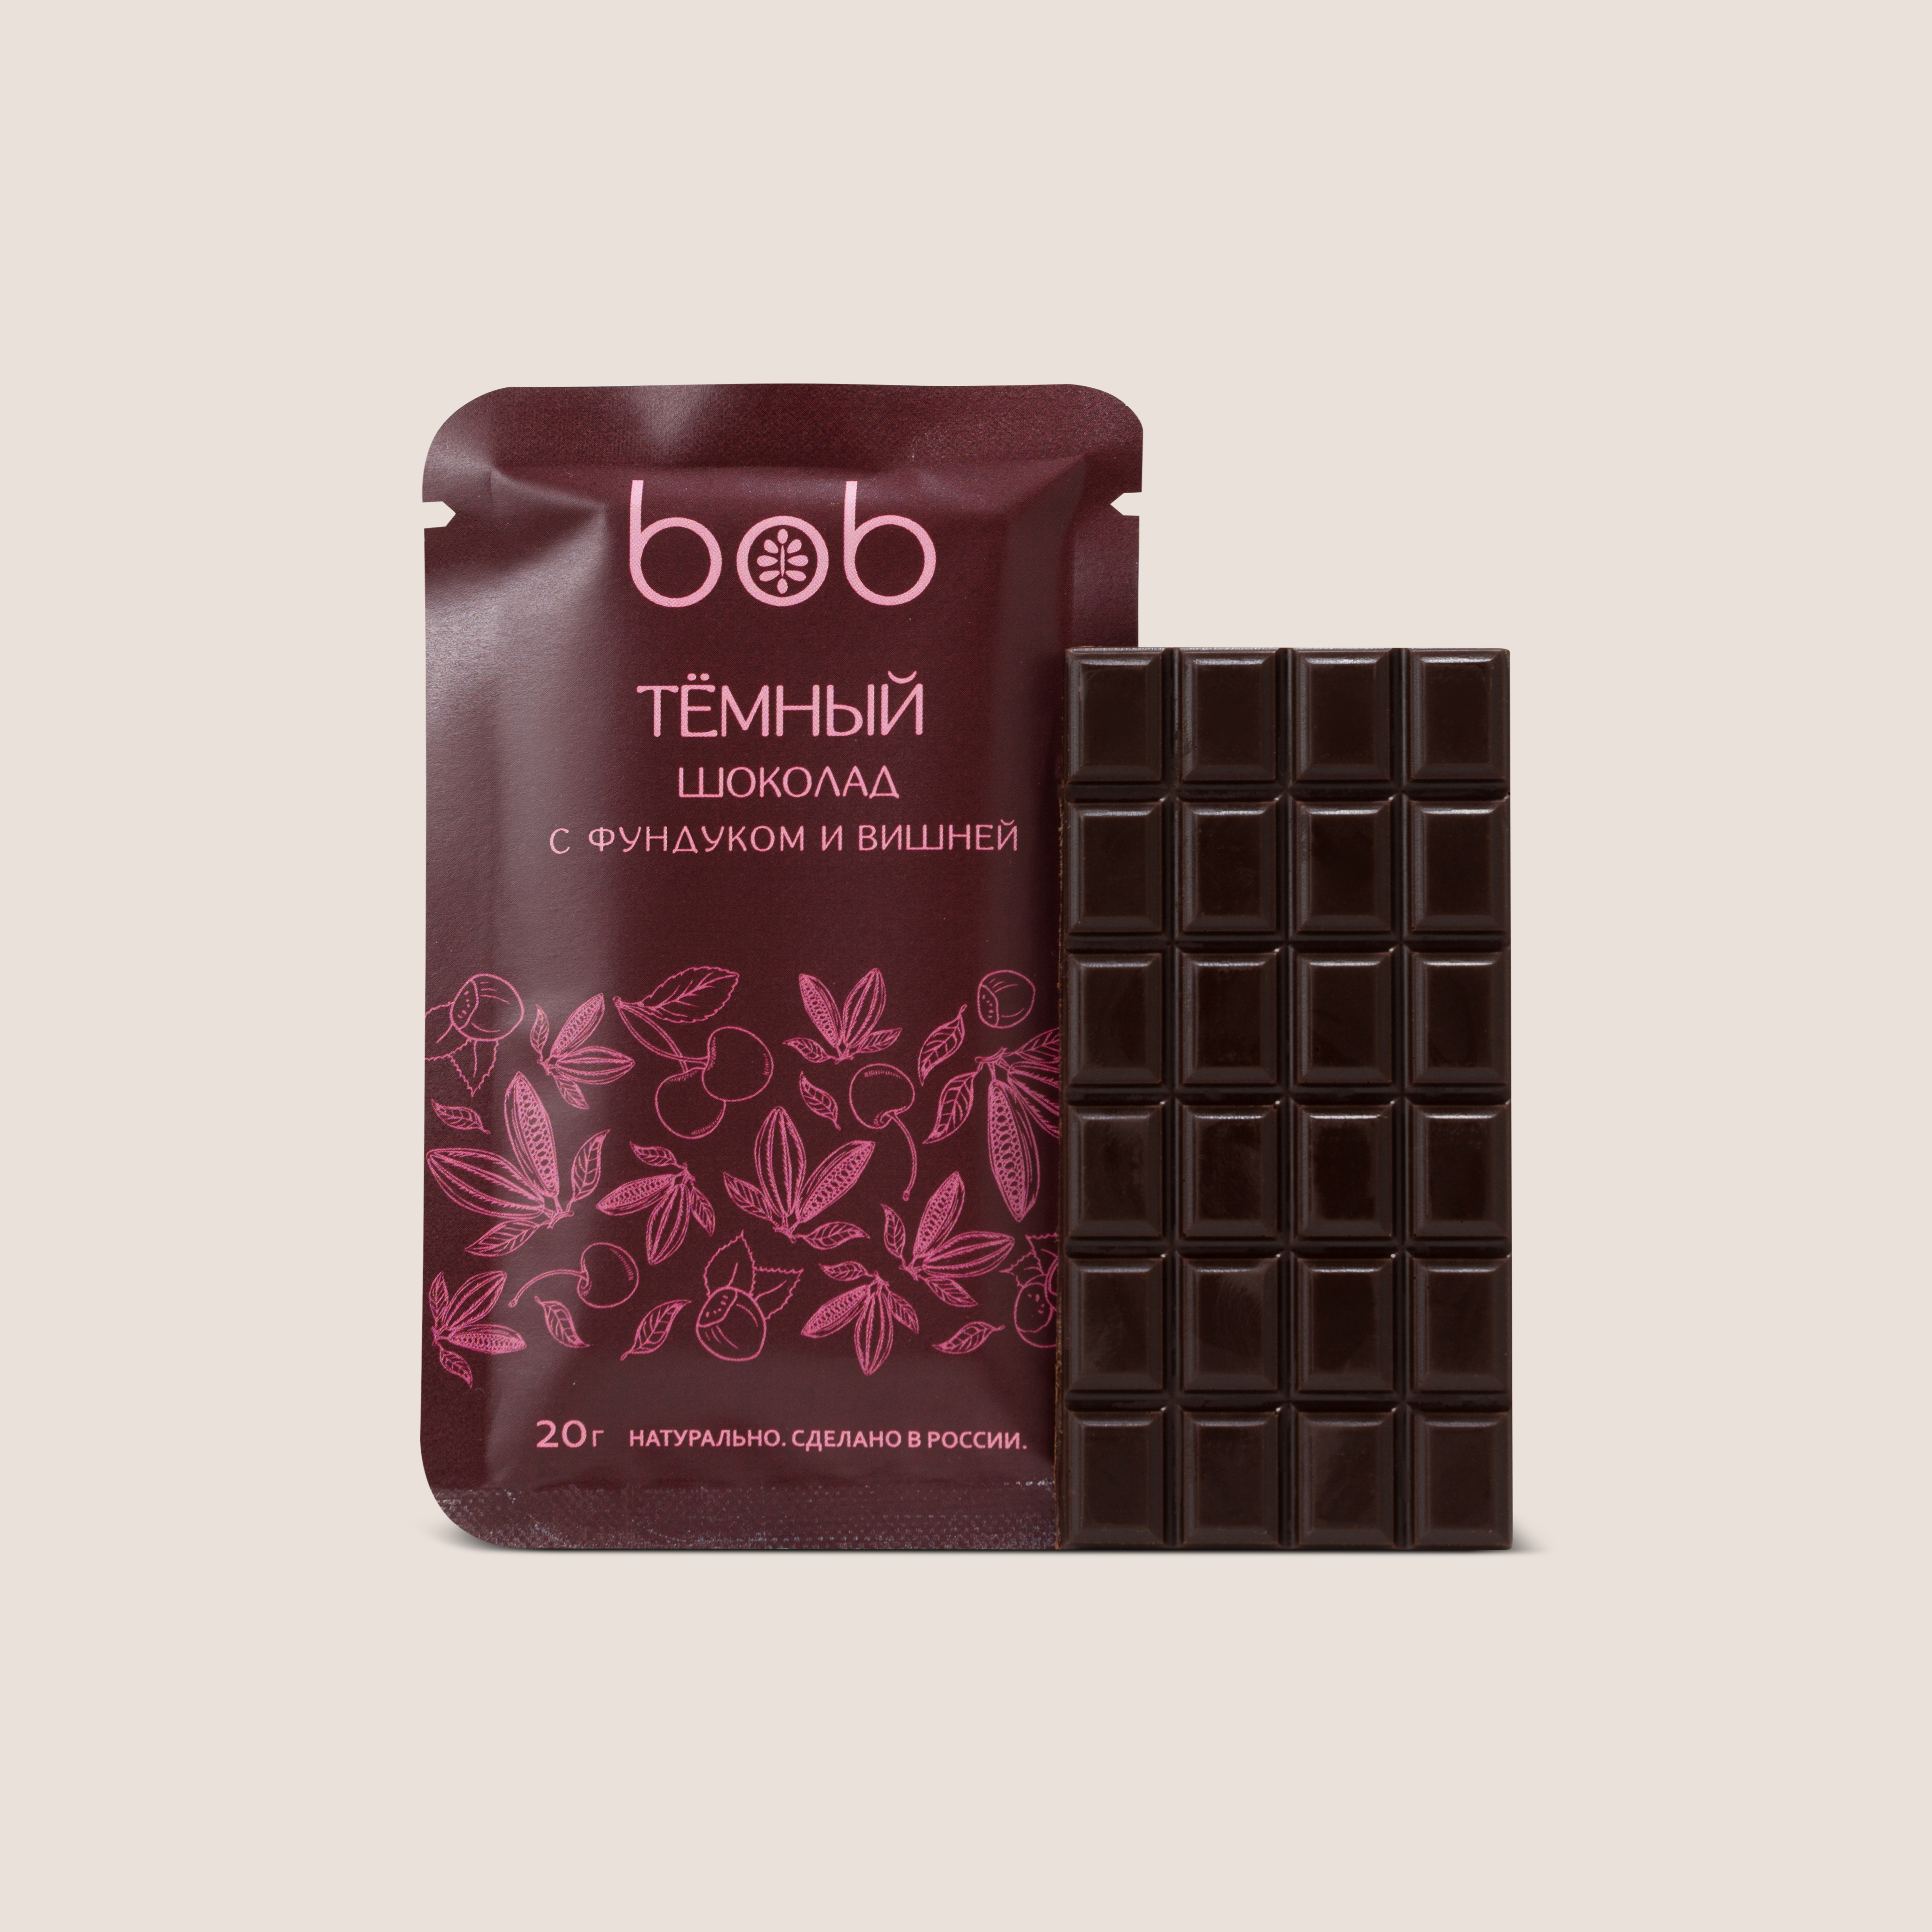 шоколад темный с фундуком и вишней, bob